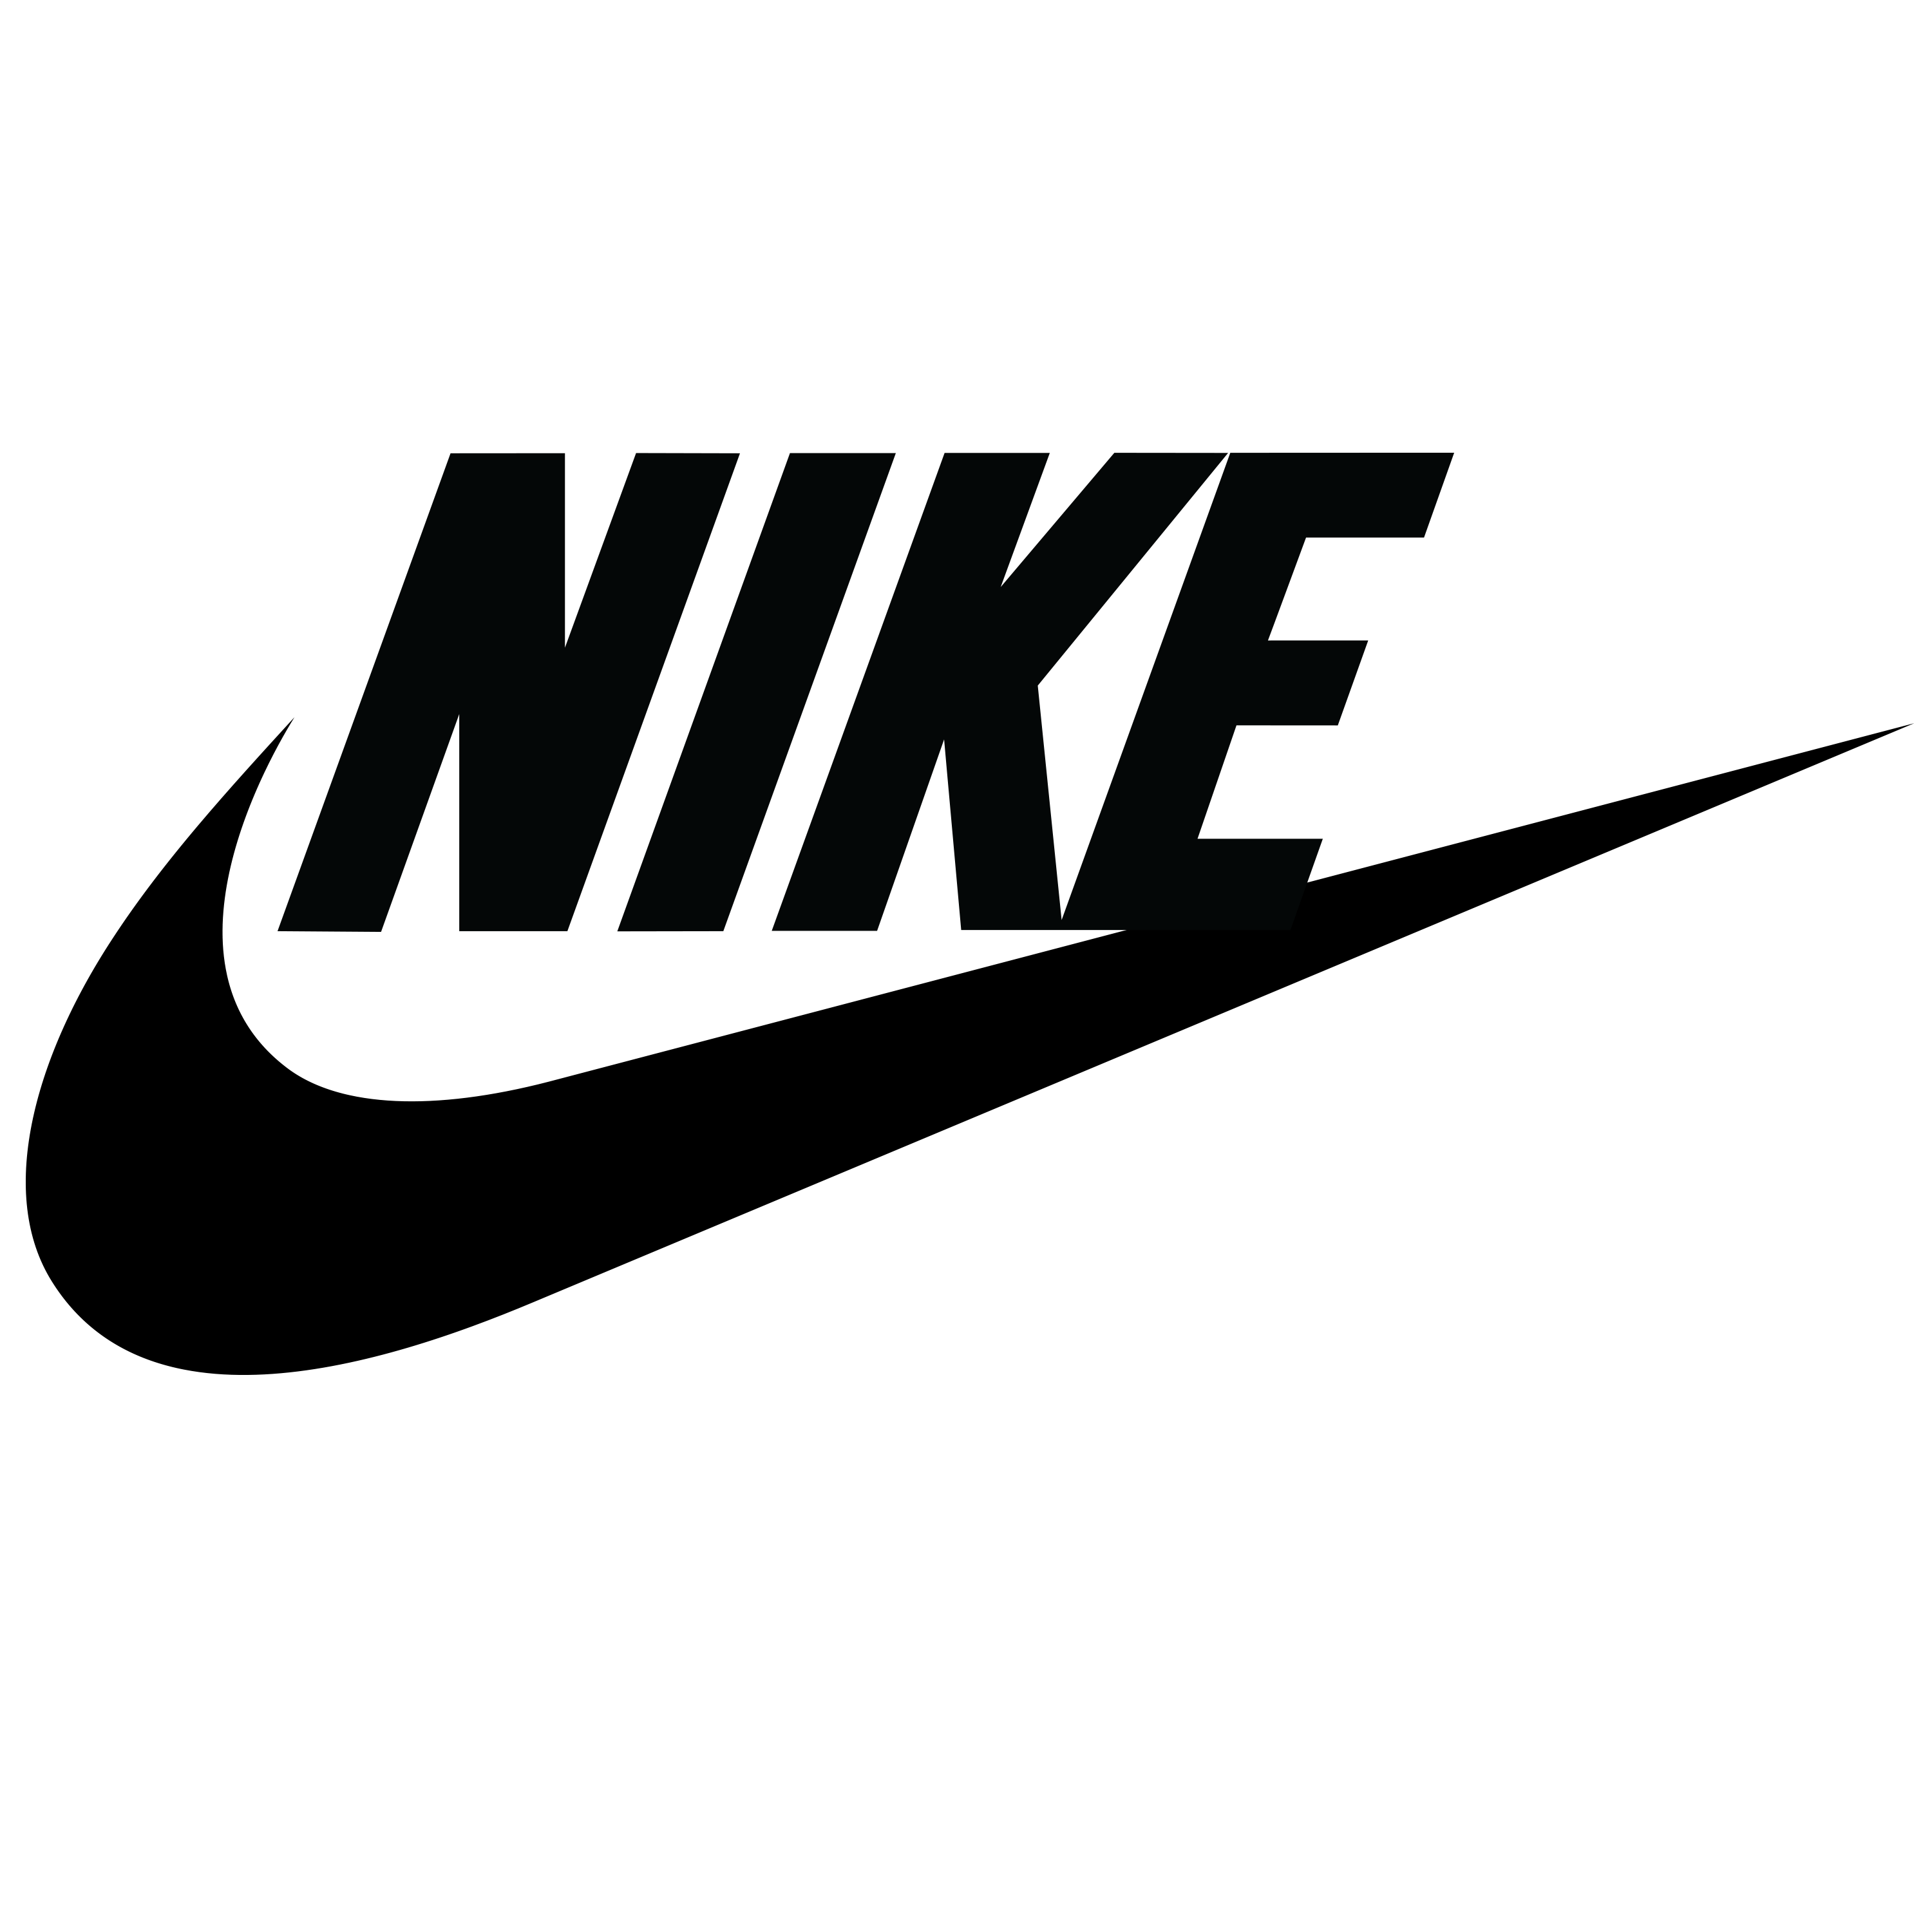 Nike Logo PNG File pngteam.com